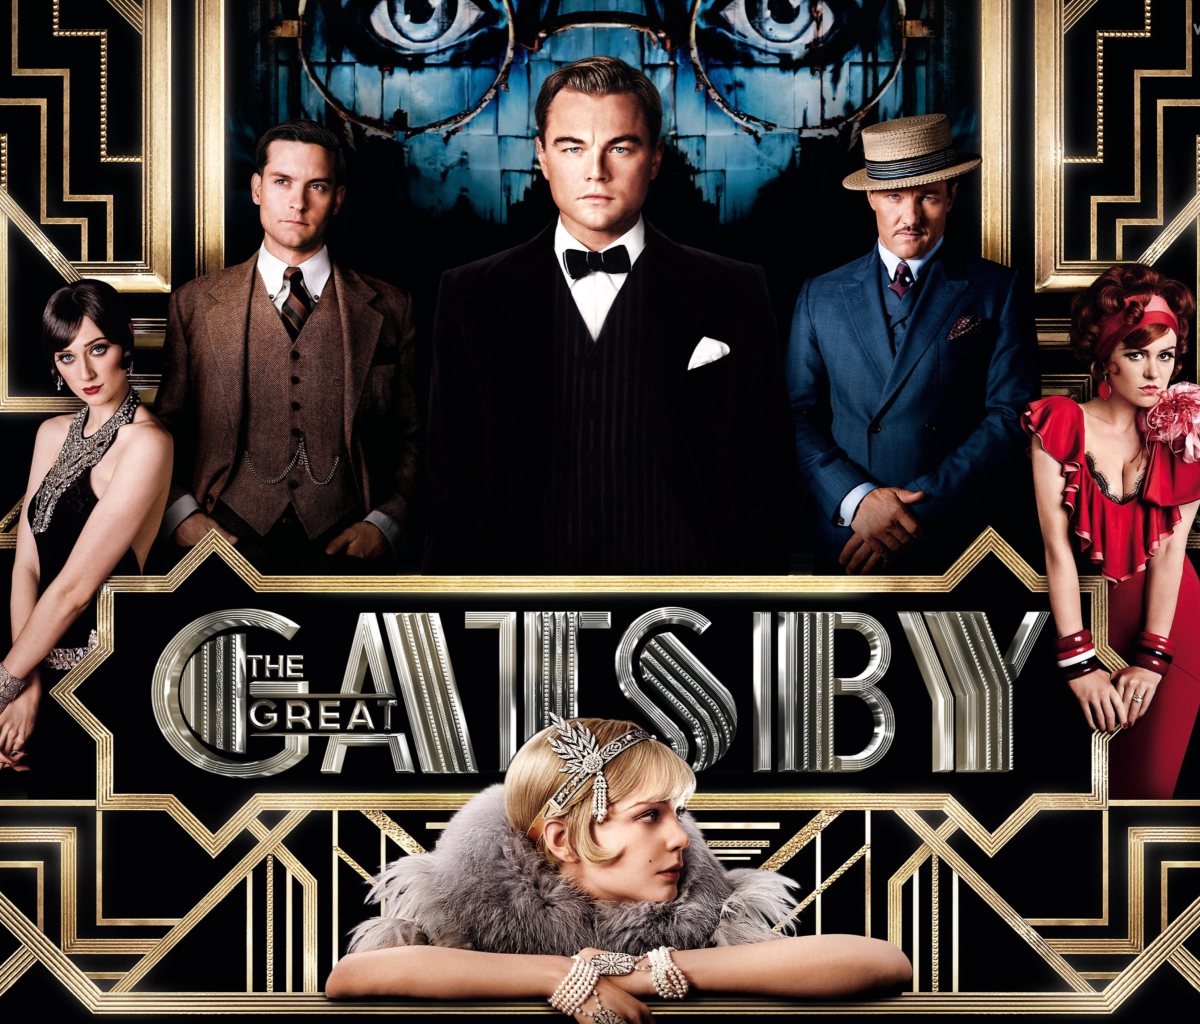 Обои The Great Gatsby Movie 1200x1024